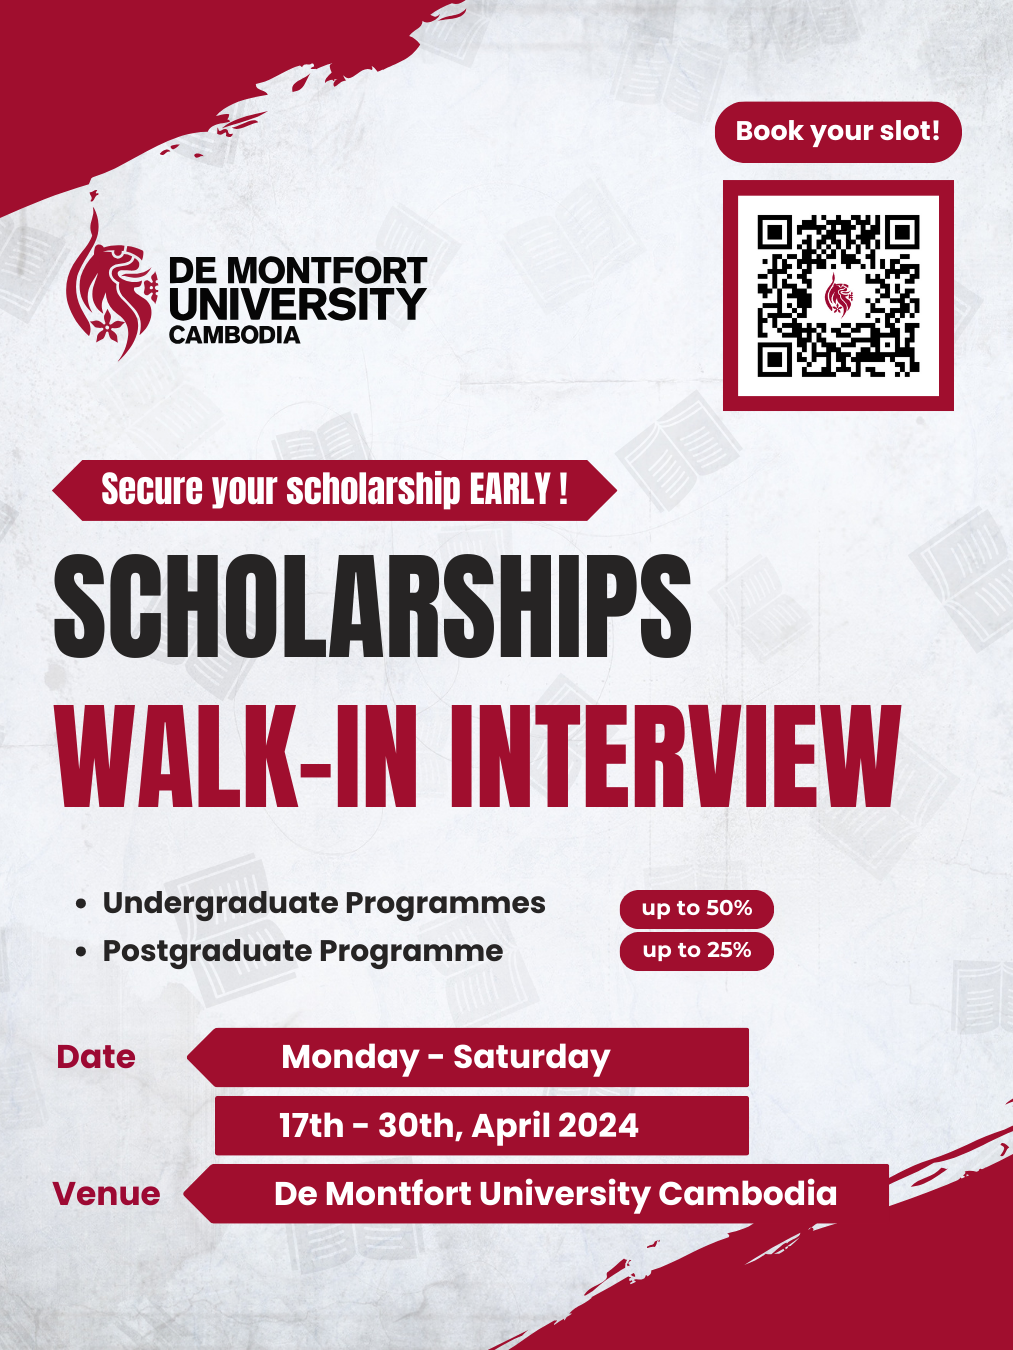 Scholarships Walk-In Interview - De Montfort University Cambodia